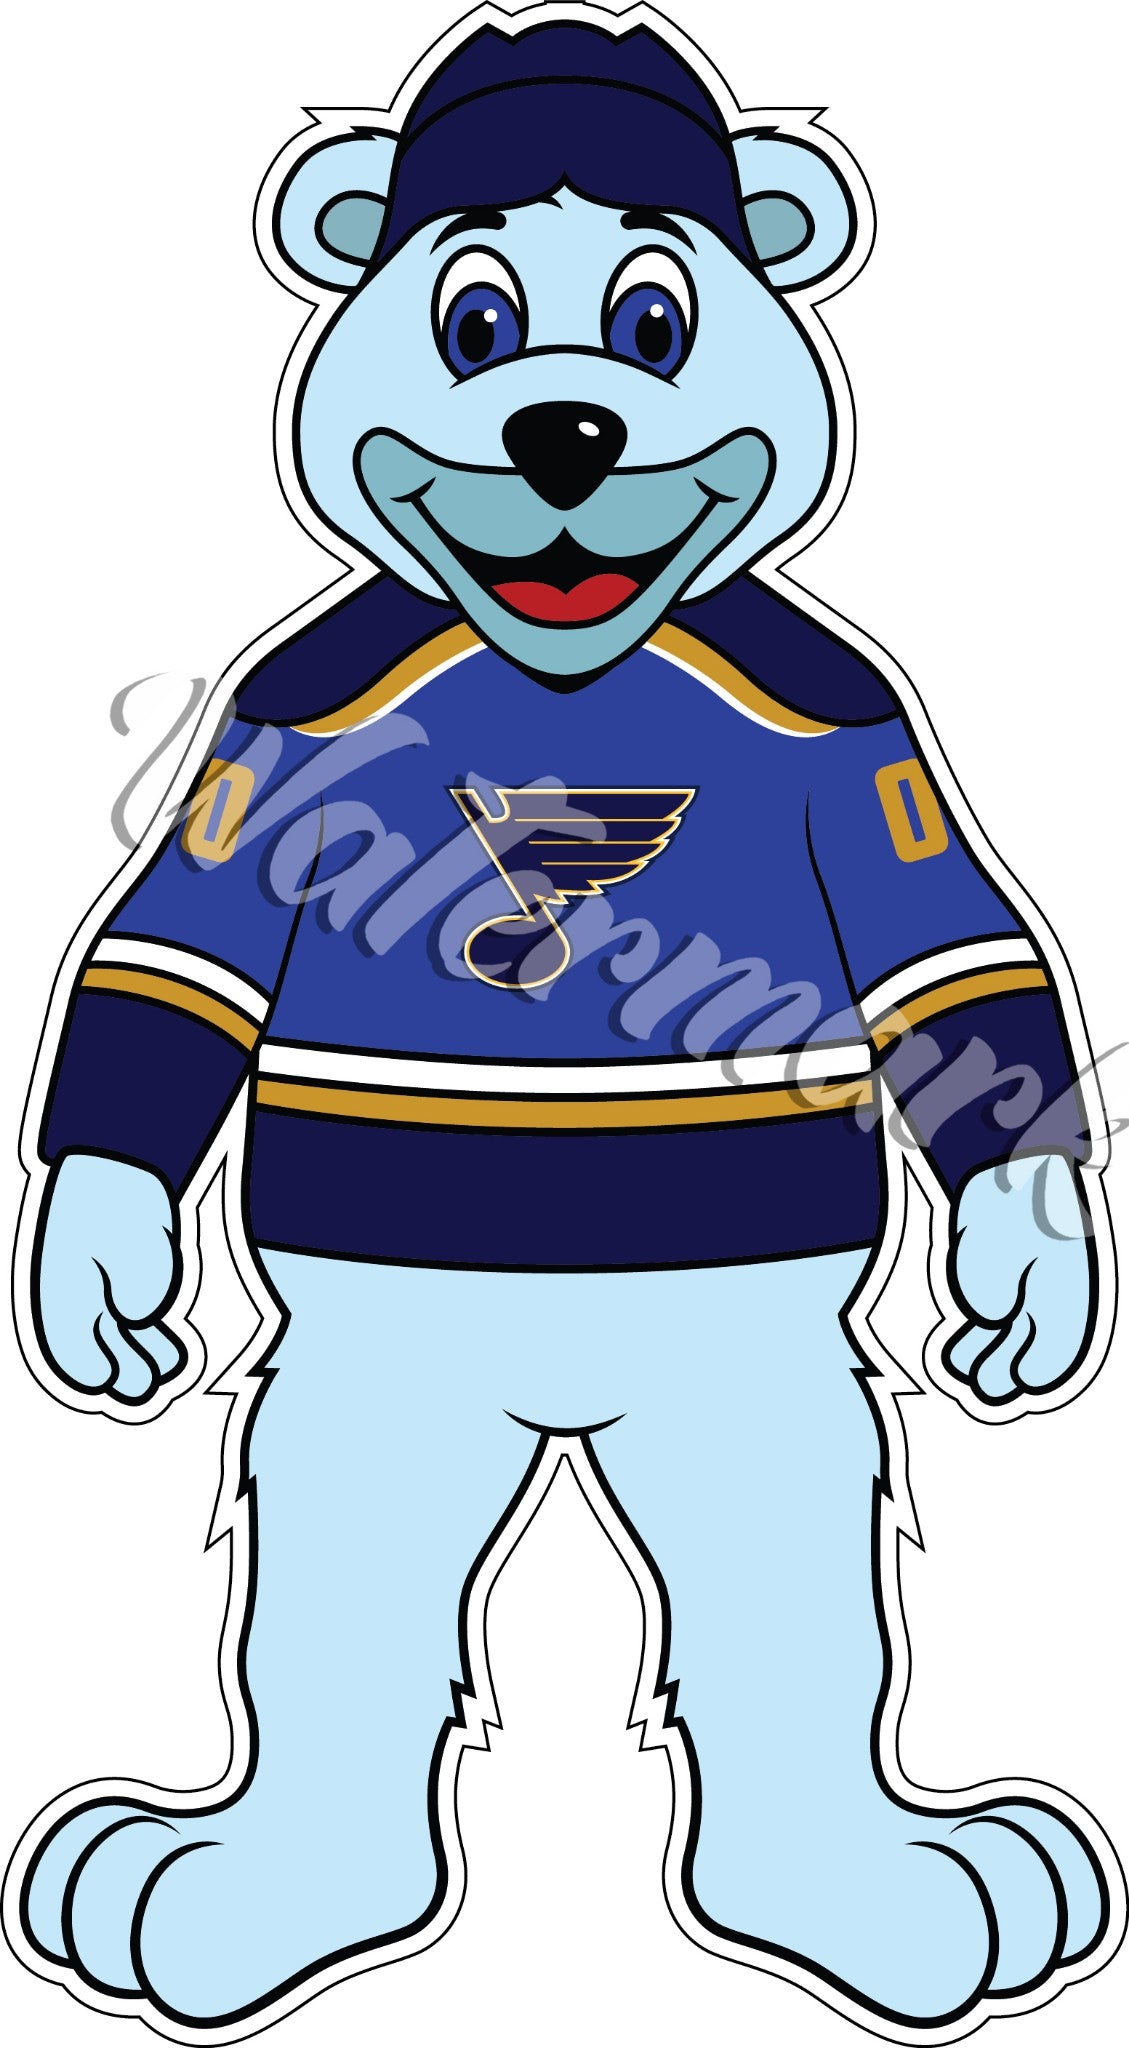 DEREK VS. LOUIE (the St. Louis Blues mascot) 